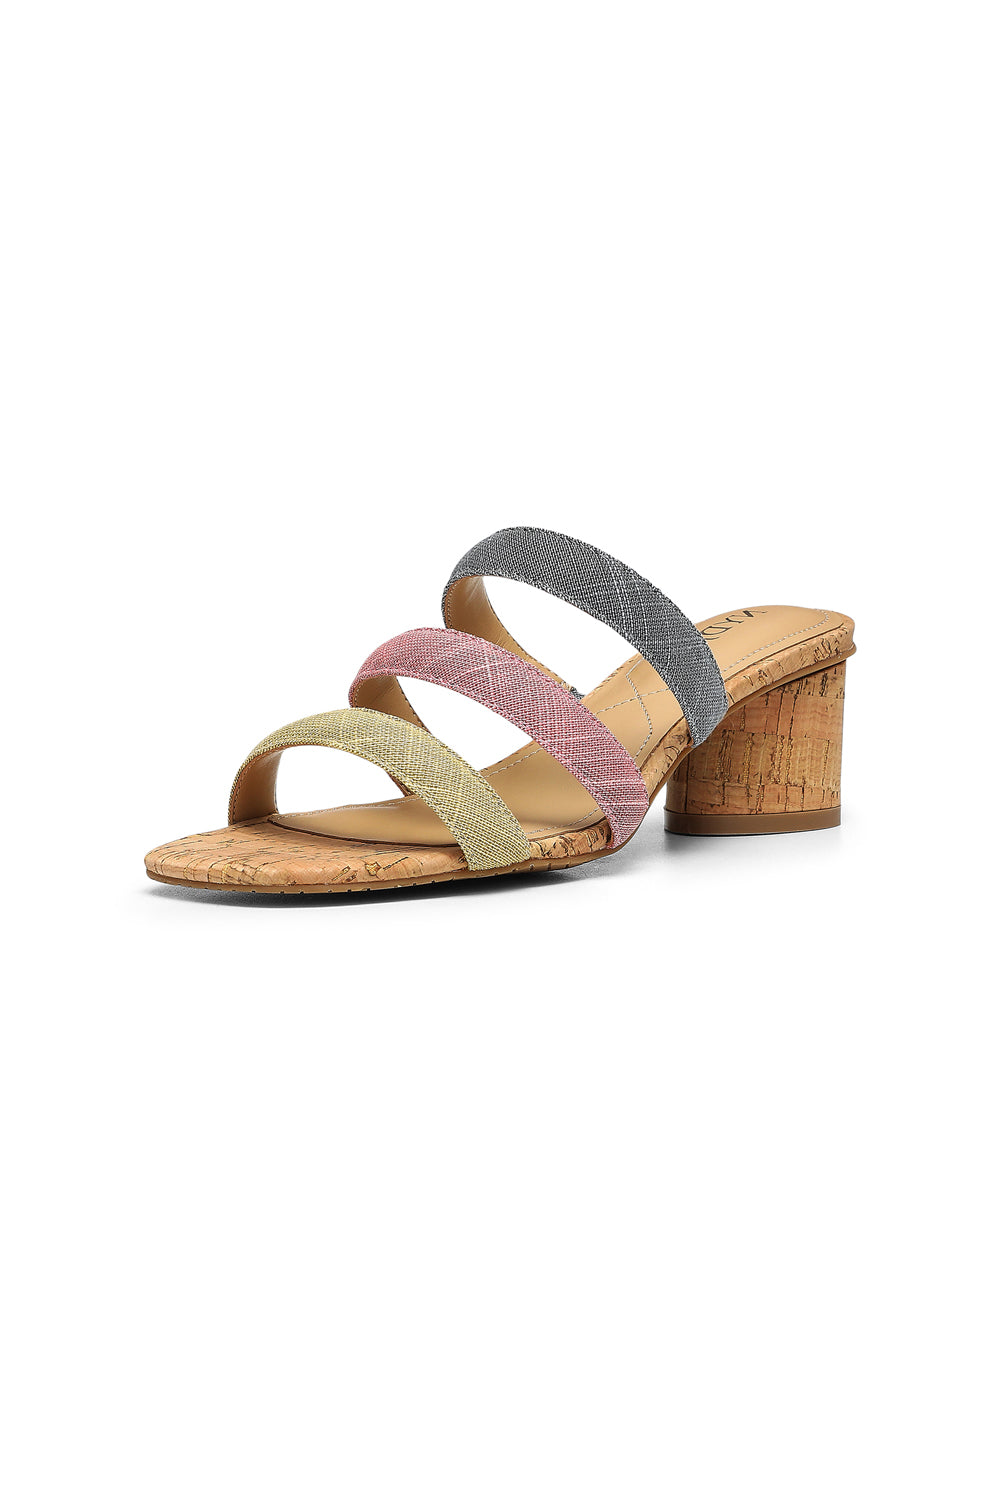 NYDJ Giacomo Block Heel Sandals In Metallic Linen - Multi